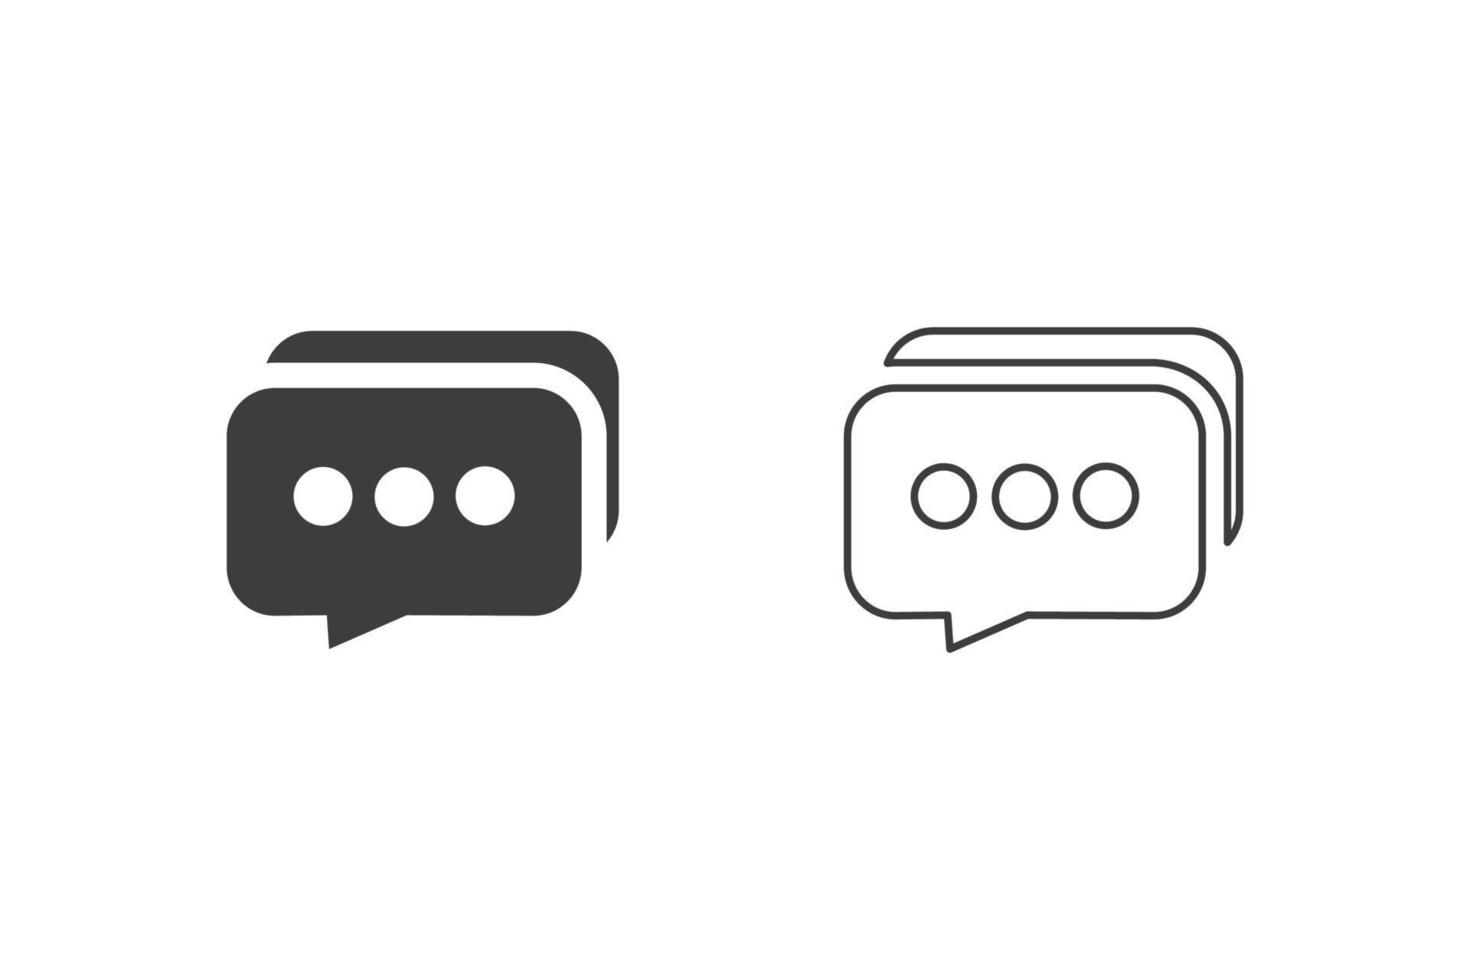 iconos de chat diseño plano o iconos de chat. 2 estilos de iconos de chat aislados en fondo blanco. vector